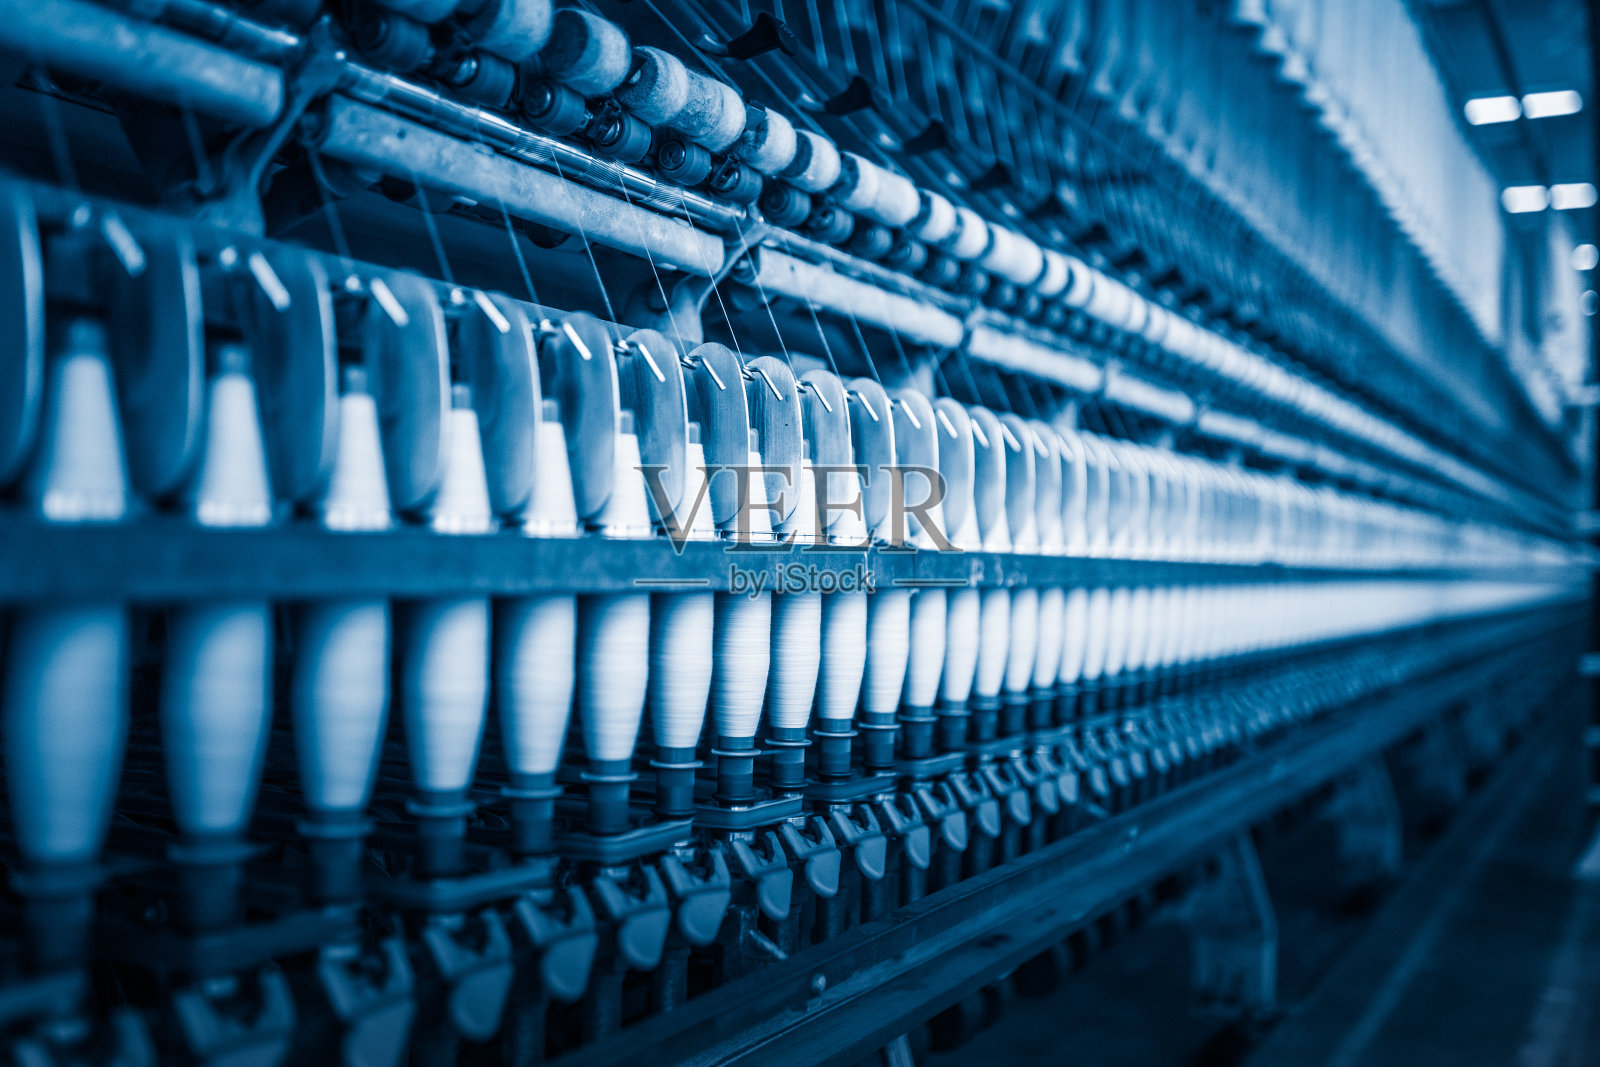 棉纺厂内的制线机照片摄影图片